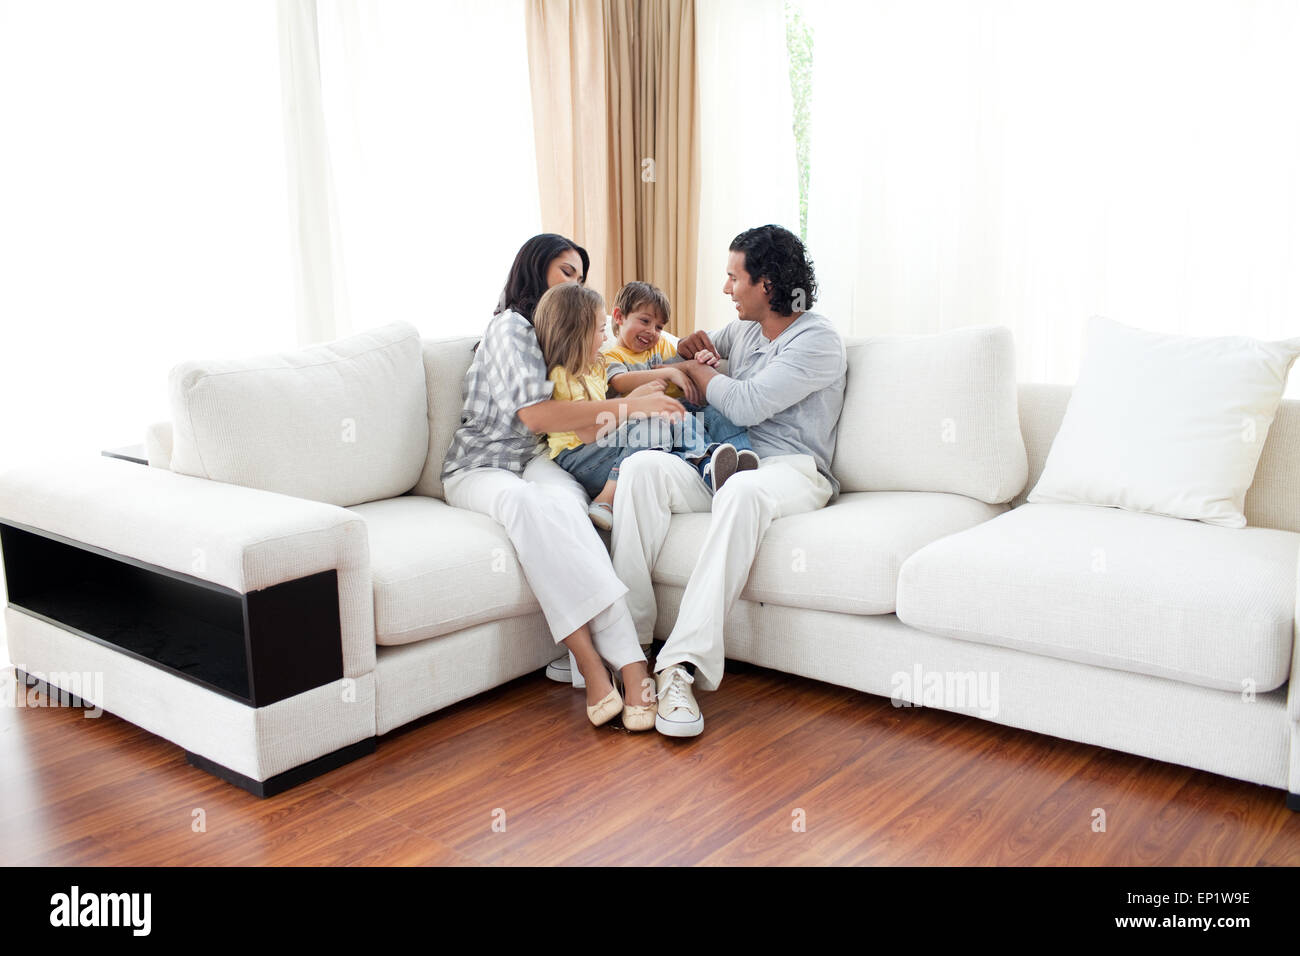 Маму на диване видео. Счастливая семья на диване. Семья сидит на диване. Семья на мягкой мебели. Парные на диване босиком.